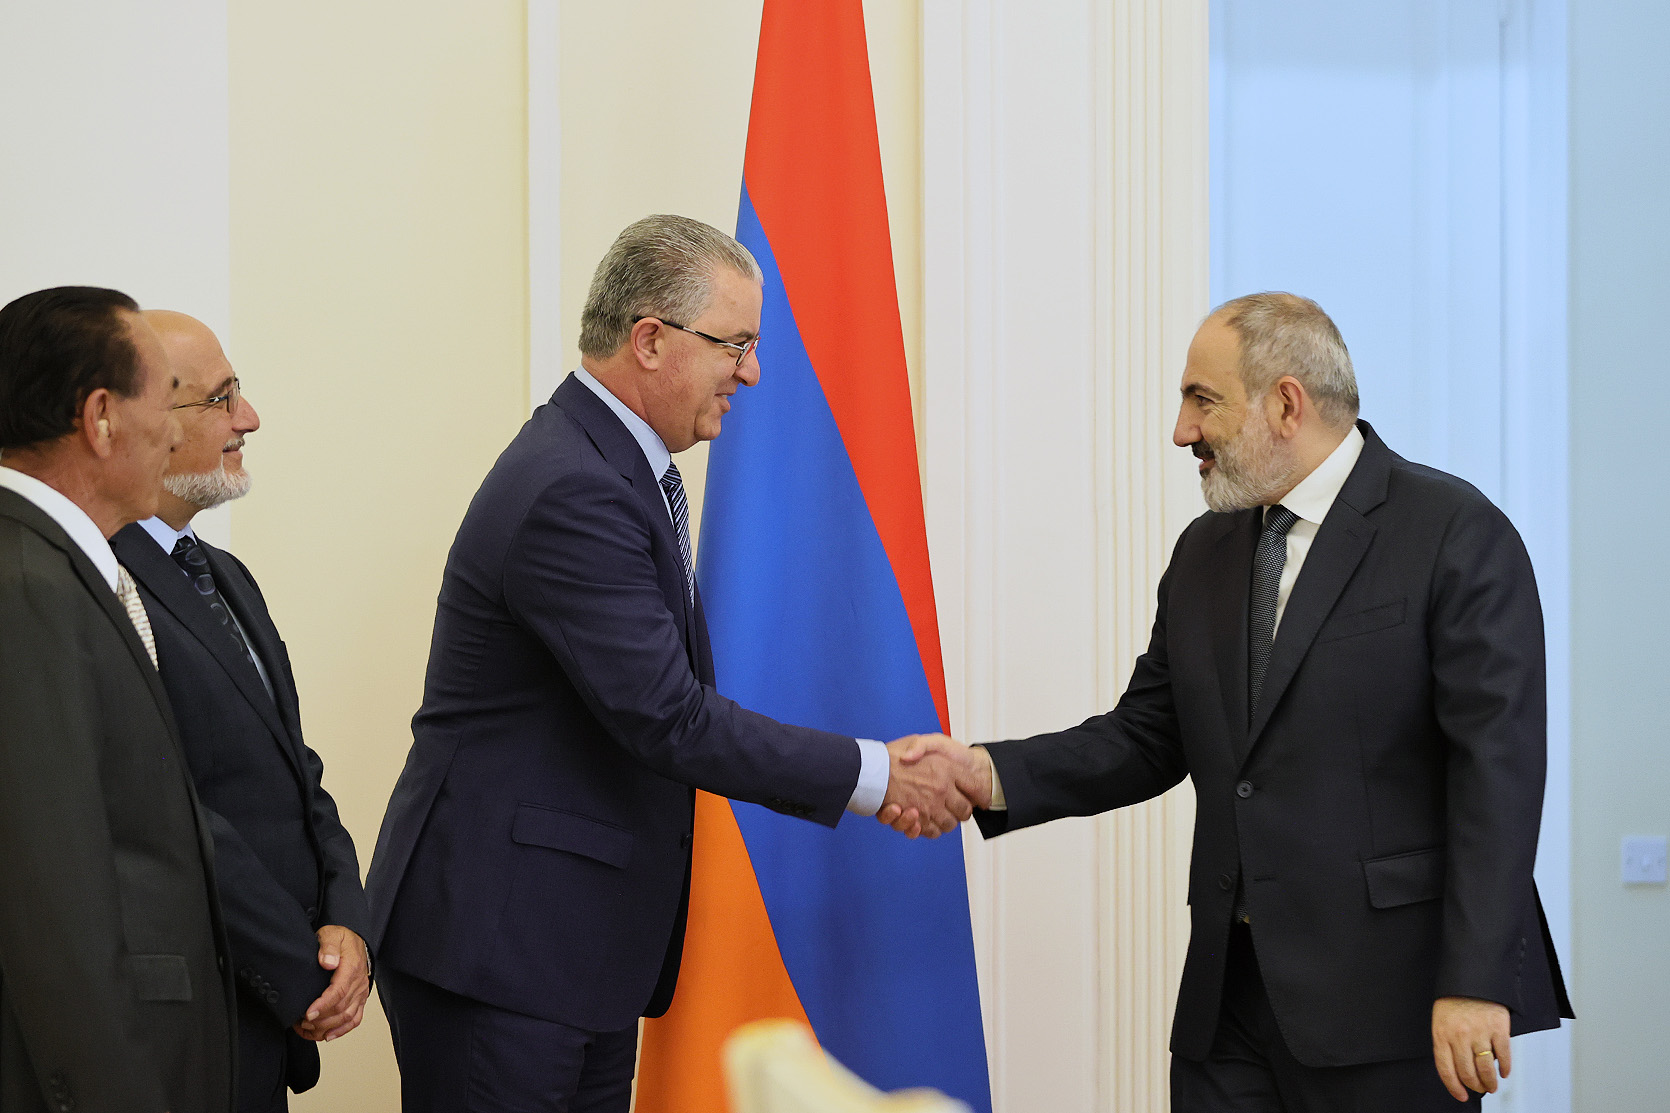 Никол Пашинян отметил важность сотрудничества между правительством РА и СДПГ